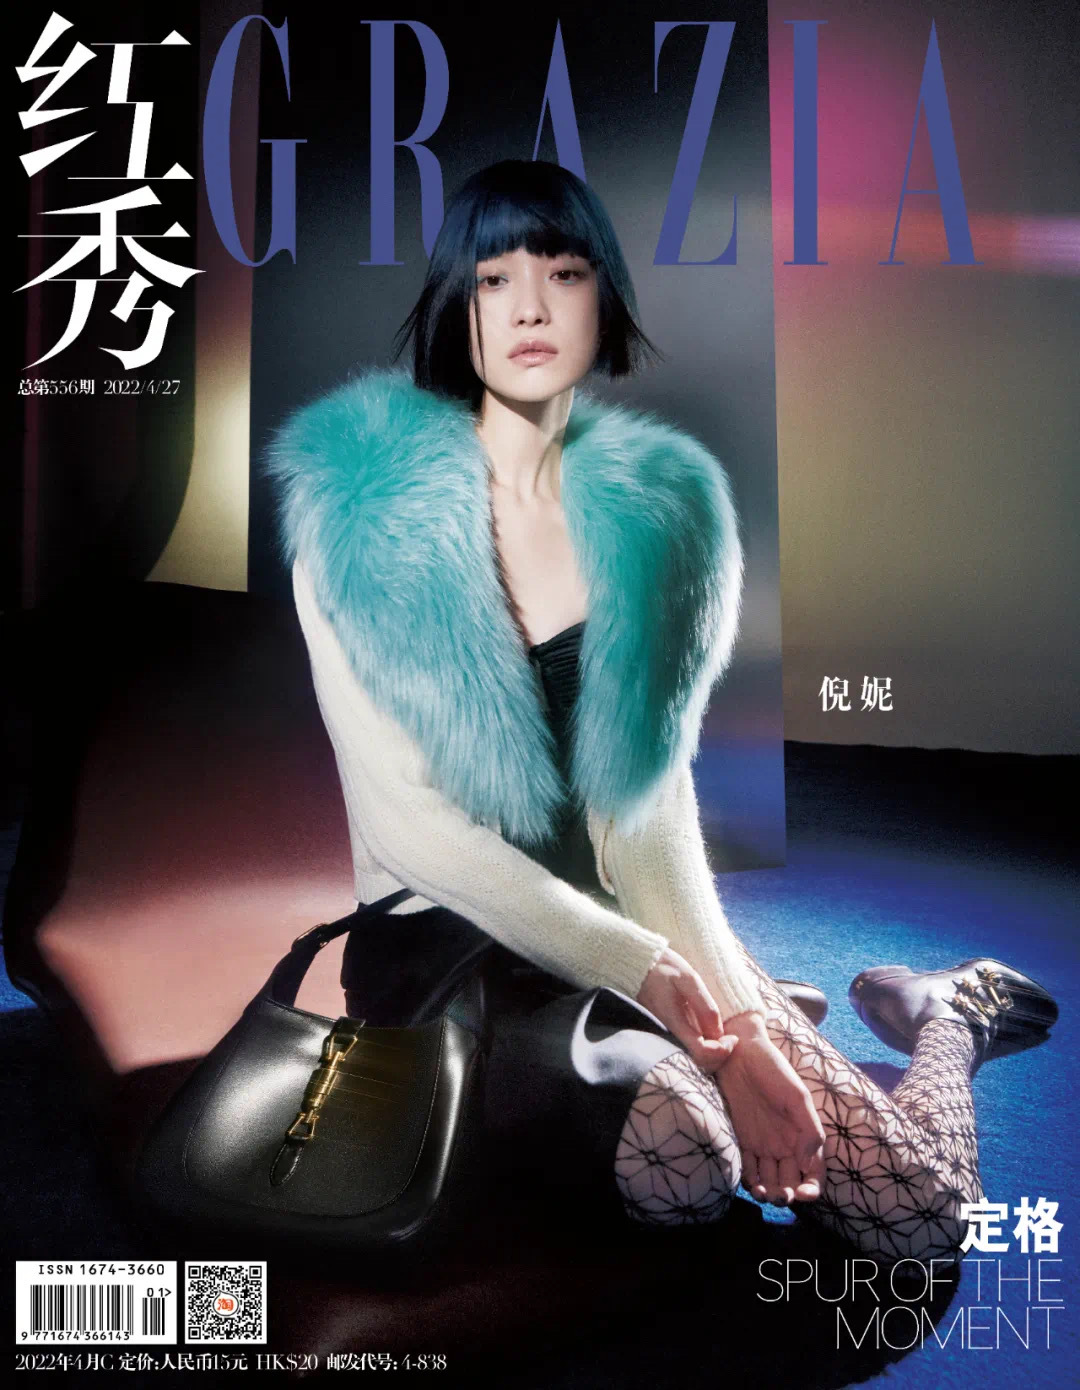 倪妮 x 红秀GRAZIA 封面大片  描上靛青眼妆梳起短发的“东方机械姬”-爱读书